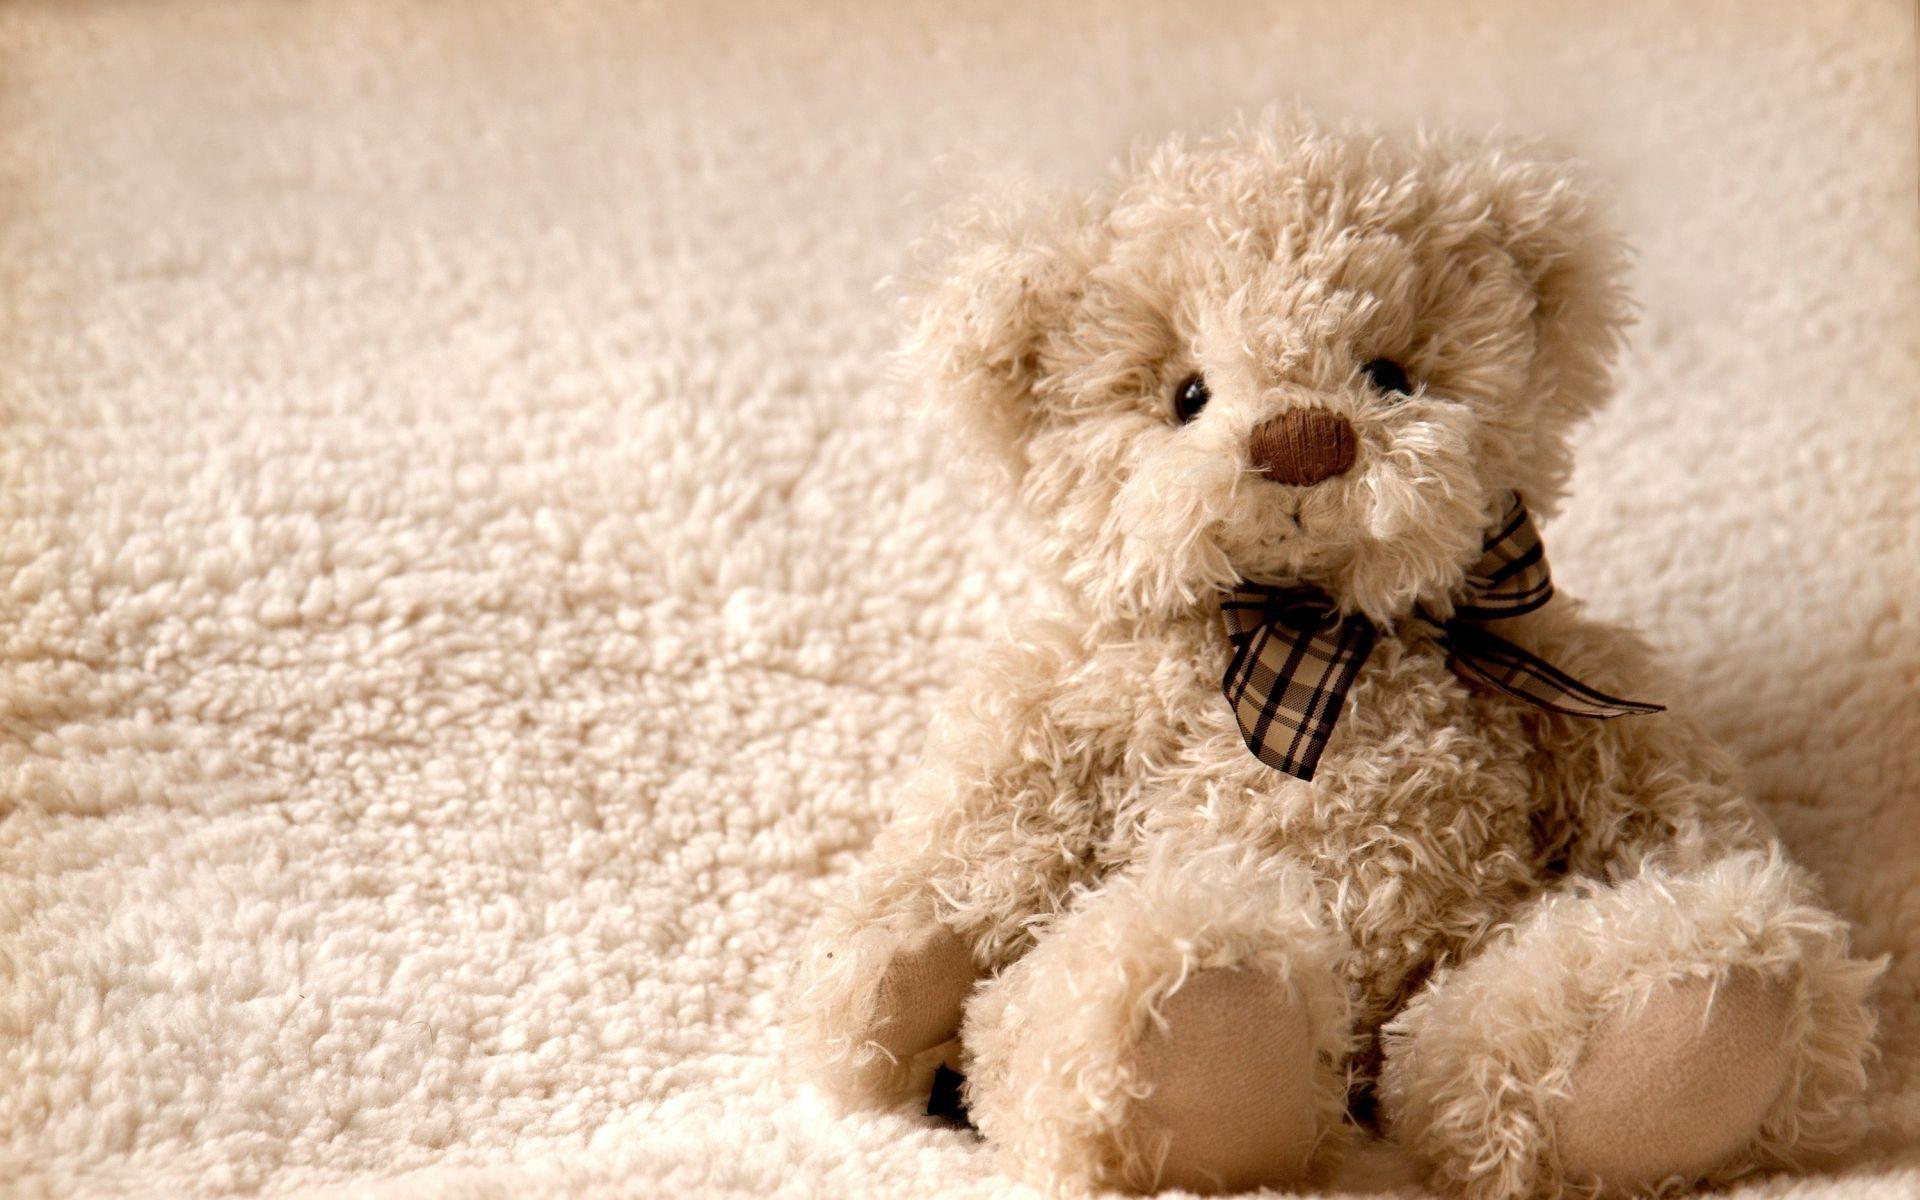 A teddy bear sitting on a white fluffy carpet - Teddy bear